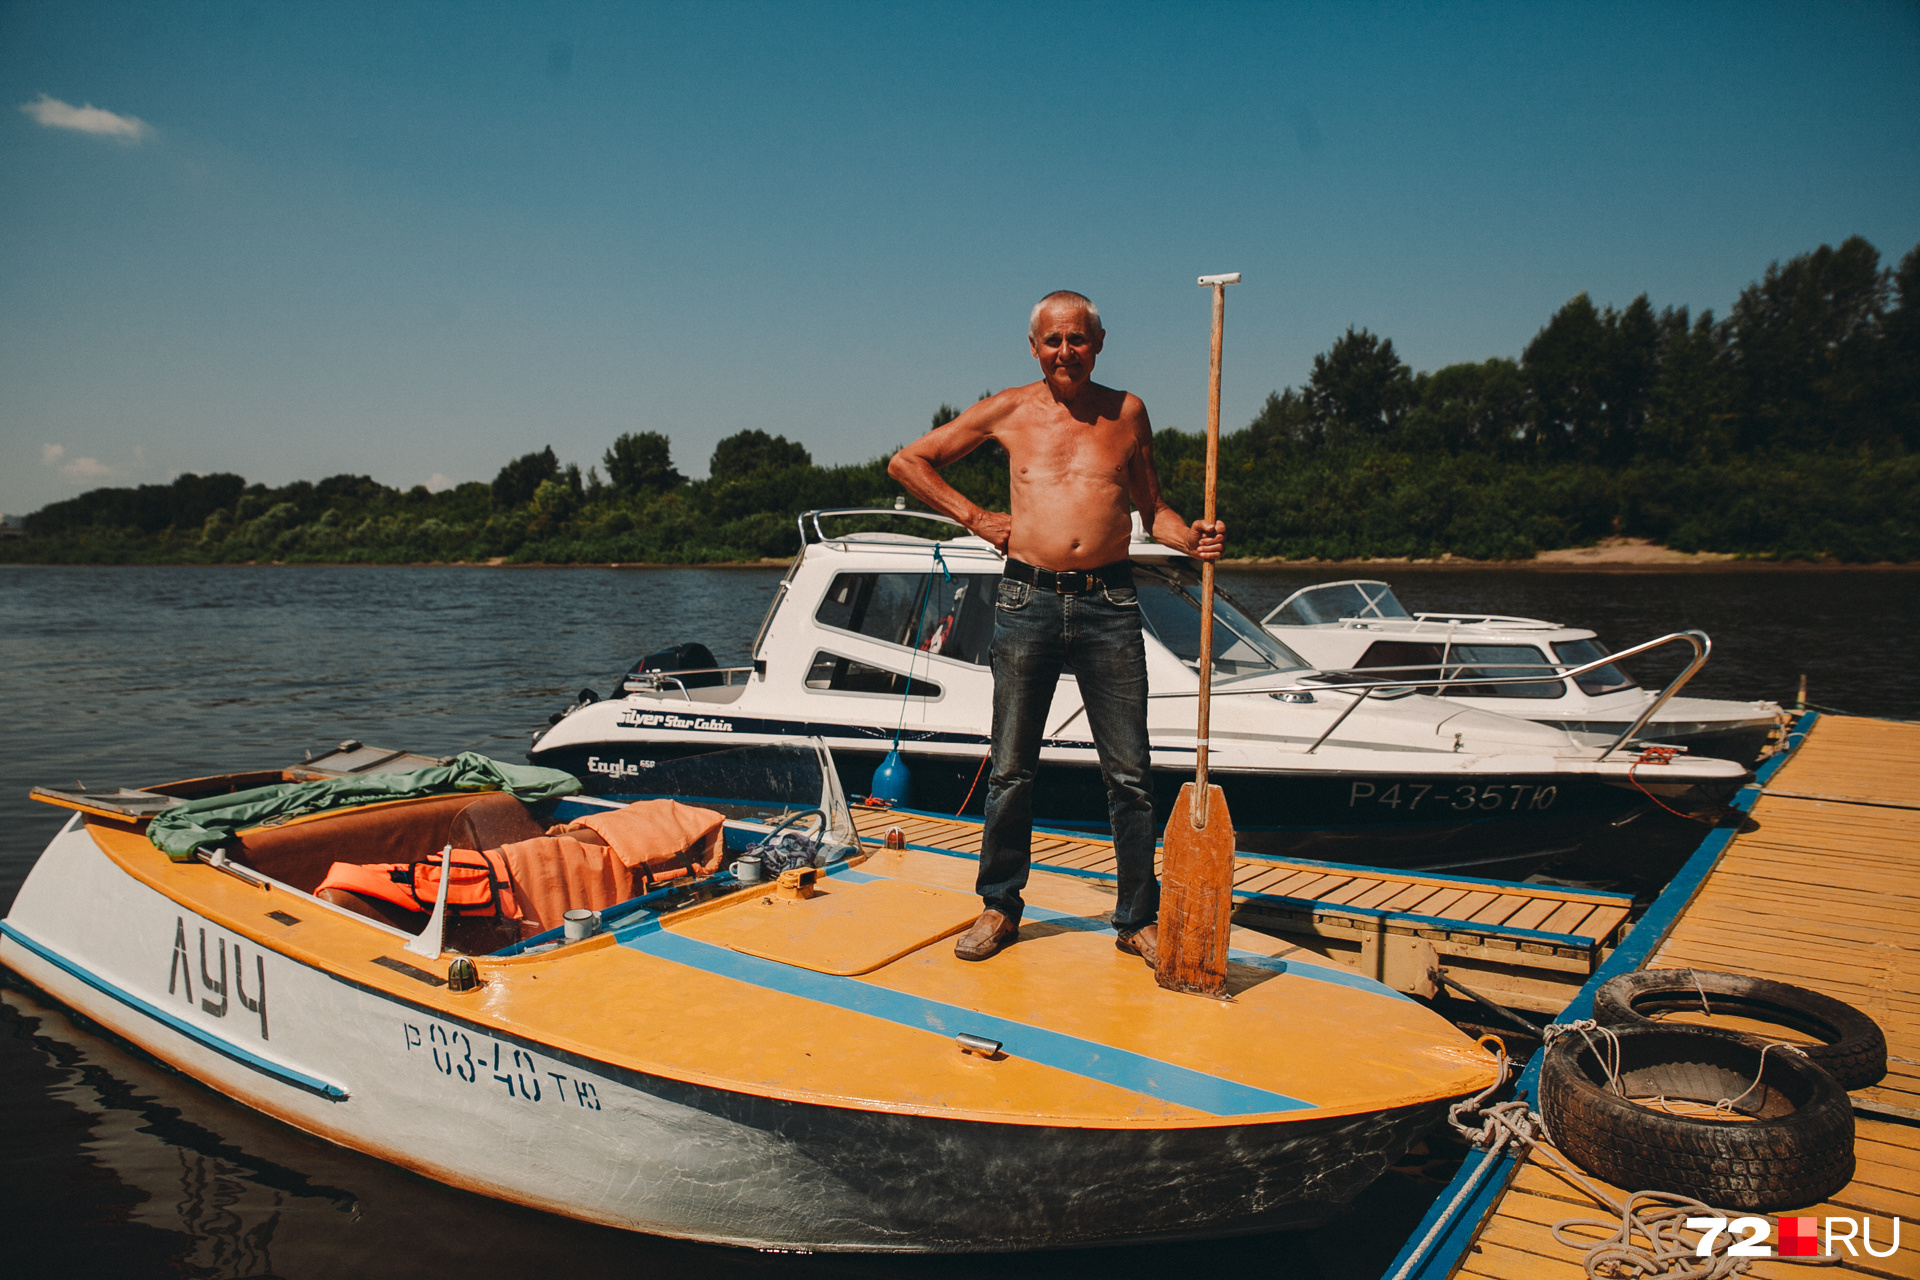 Владимиру Бухвалову 71 год, он коренной тюменец и практически всю жизнь провел на реке